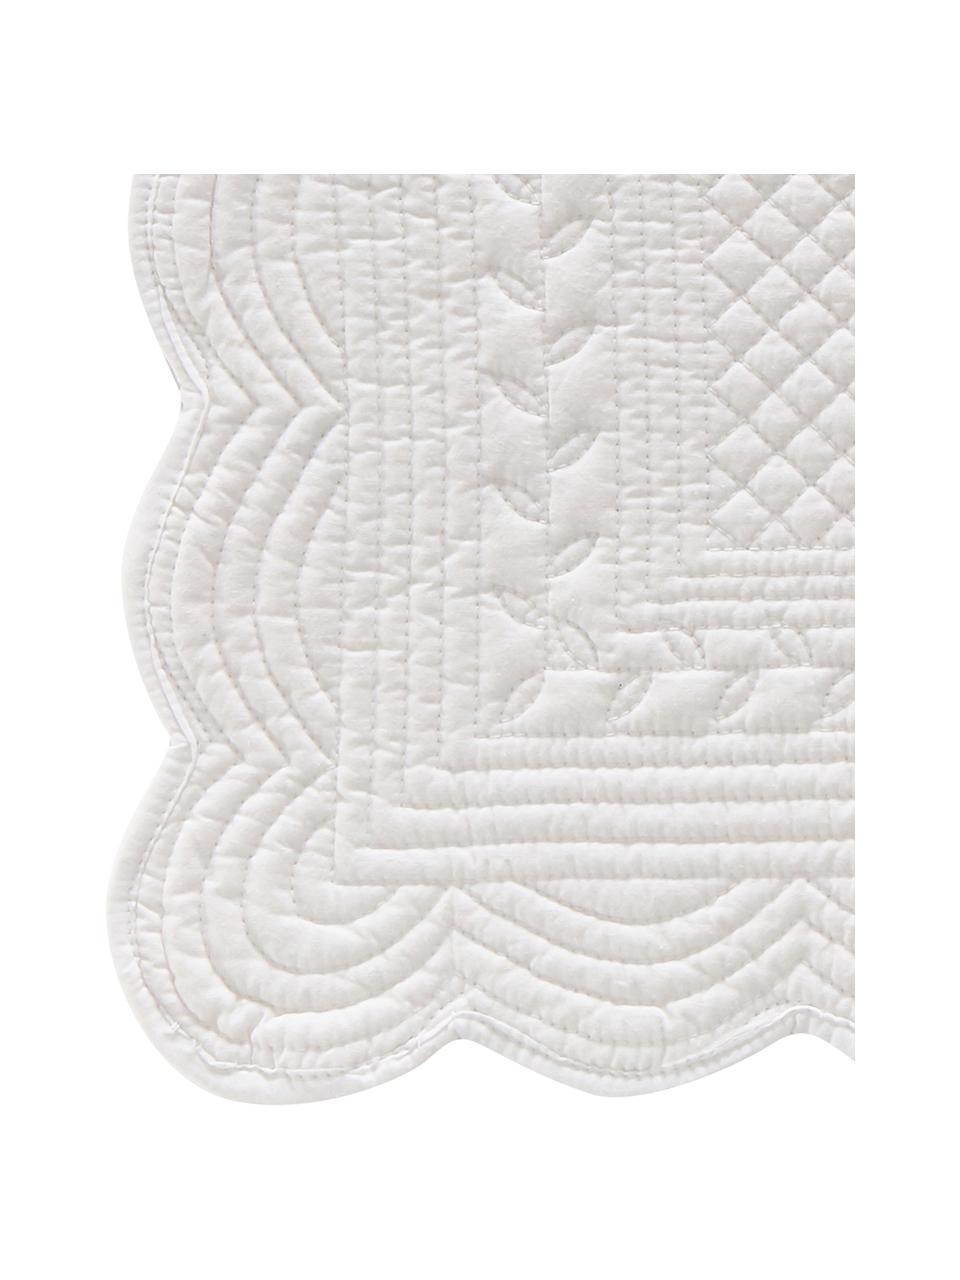 Podkładka z bawełny Boutis, 2 szt., 100% bawełna, Biały, S 34 x D 48 cm